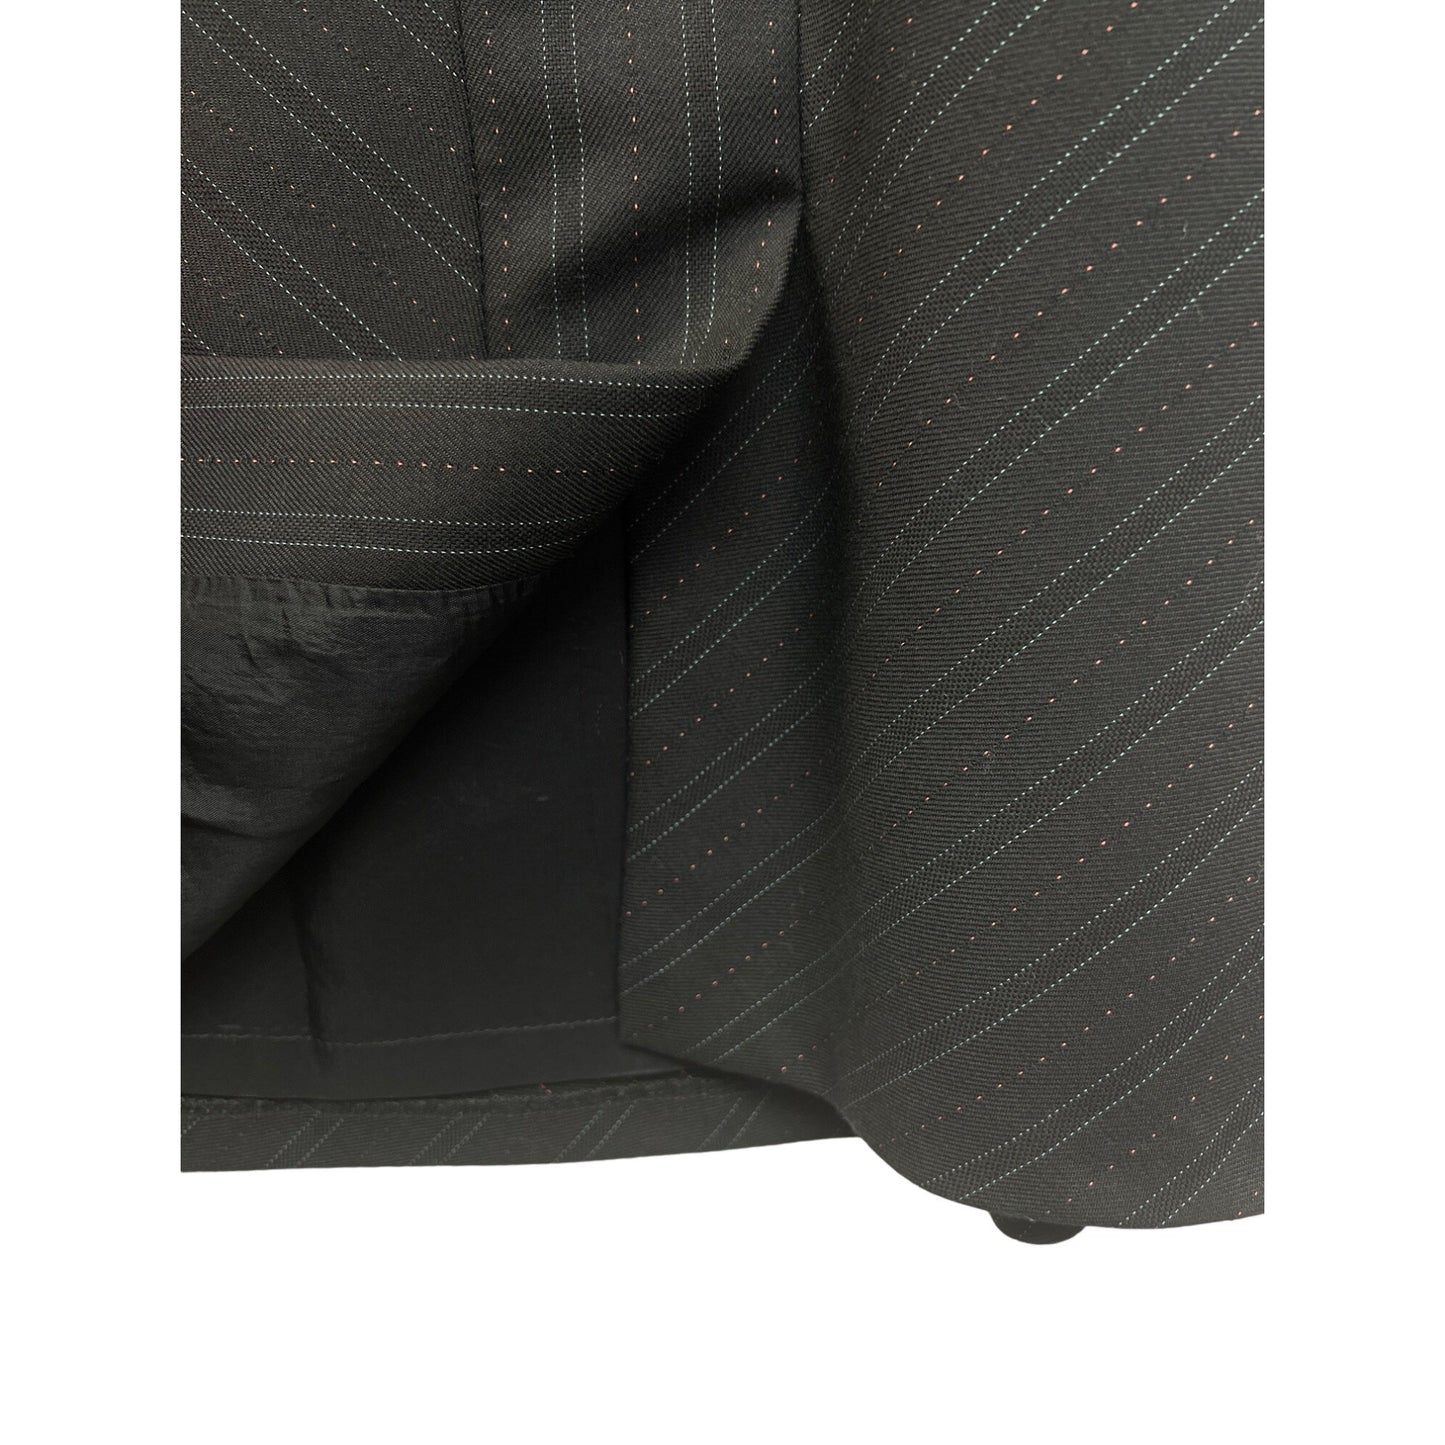 Loft Black Pinstripe Wool Blend A-Line Skirt